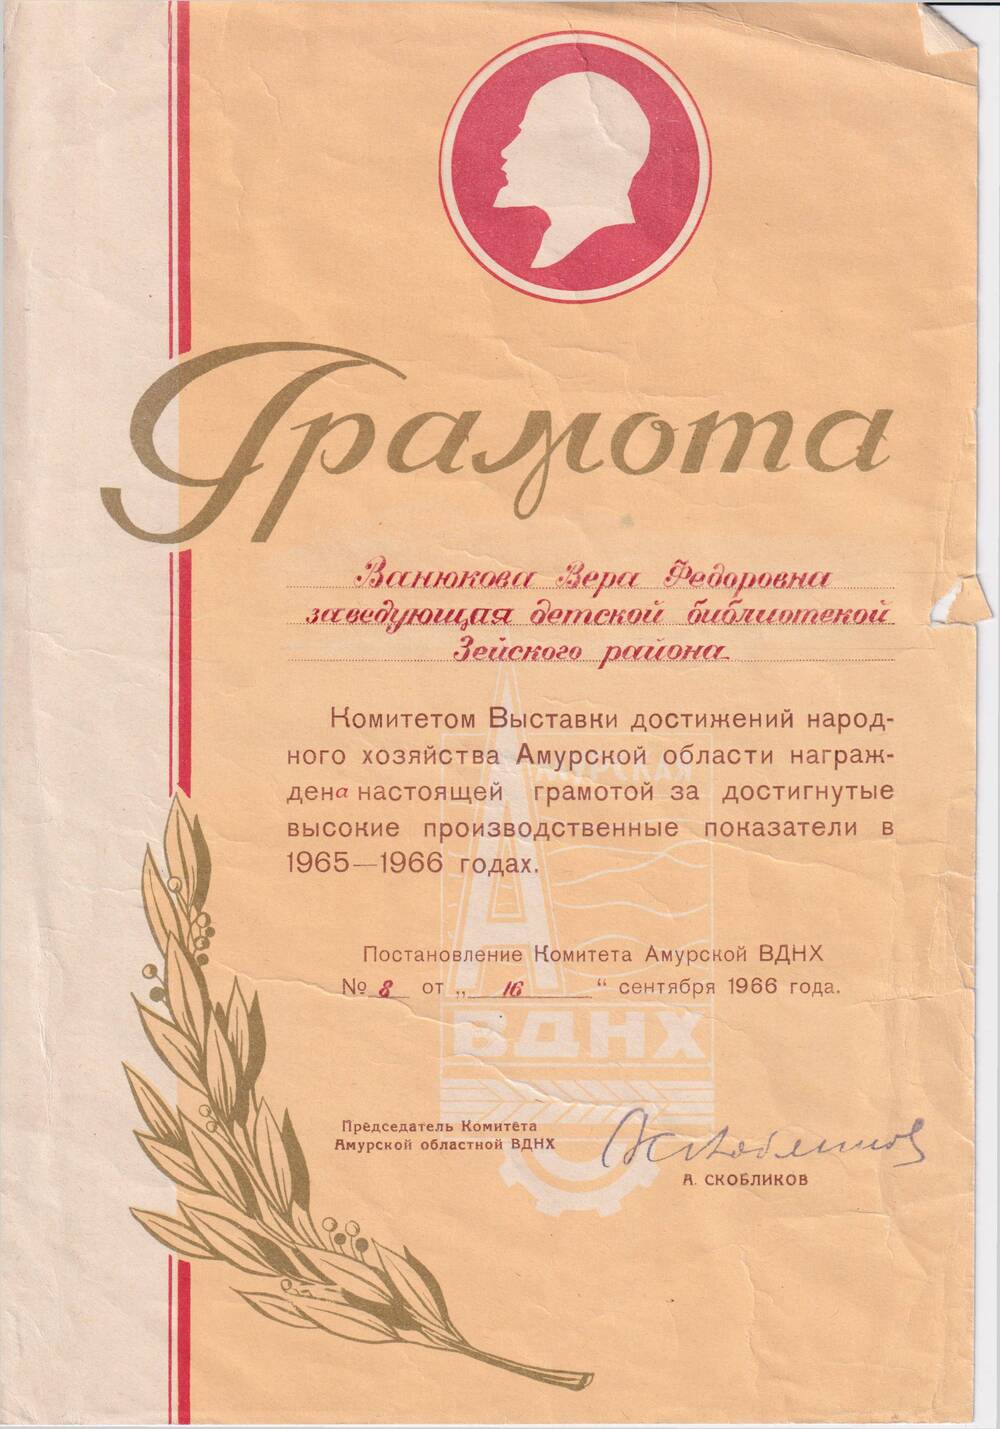 Грамота Ванюковой В.Ф. от комитета ВДНХ Амурской области за достигнутые  высокие  производственные  показатели  в 1965-1966 году.